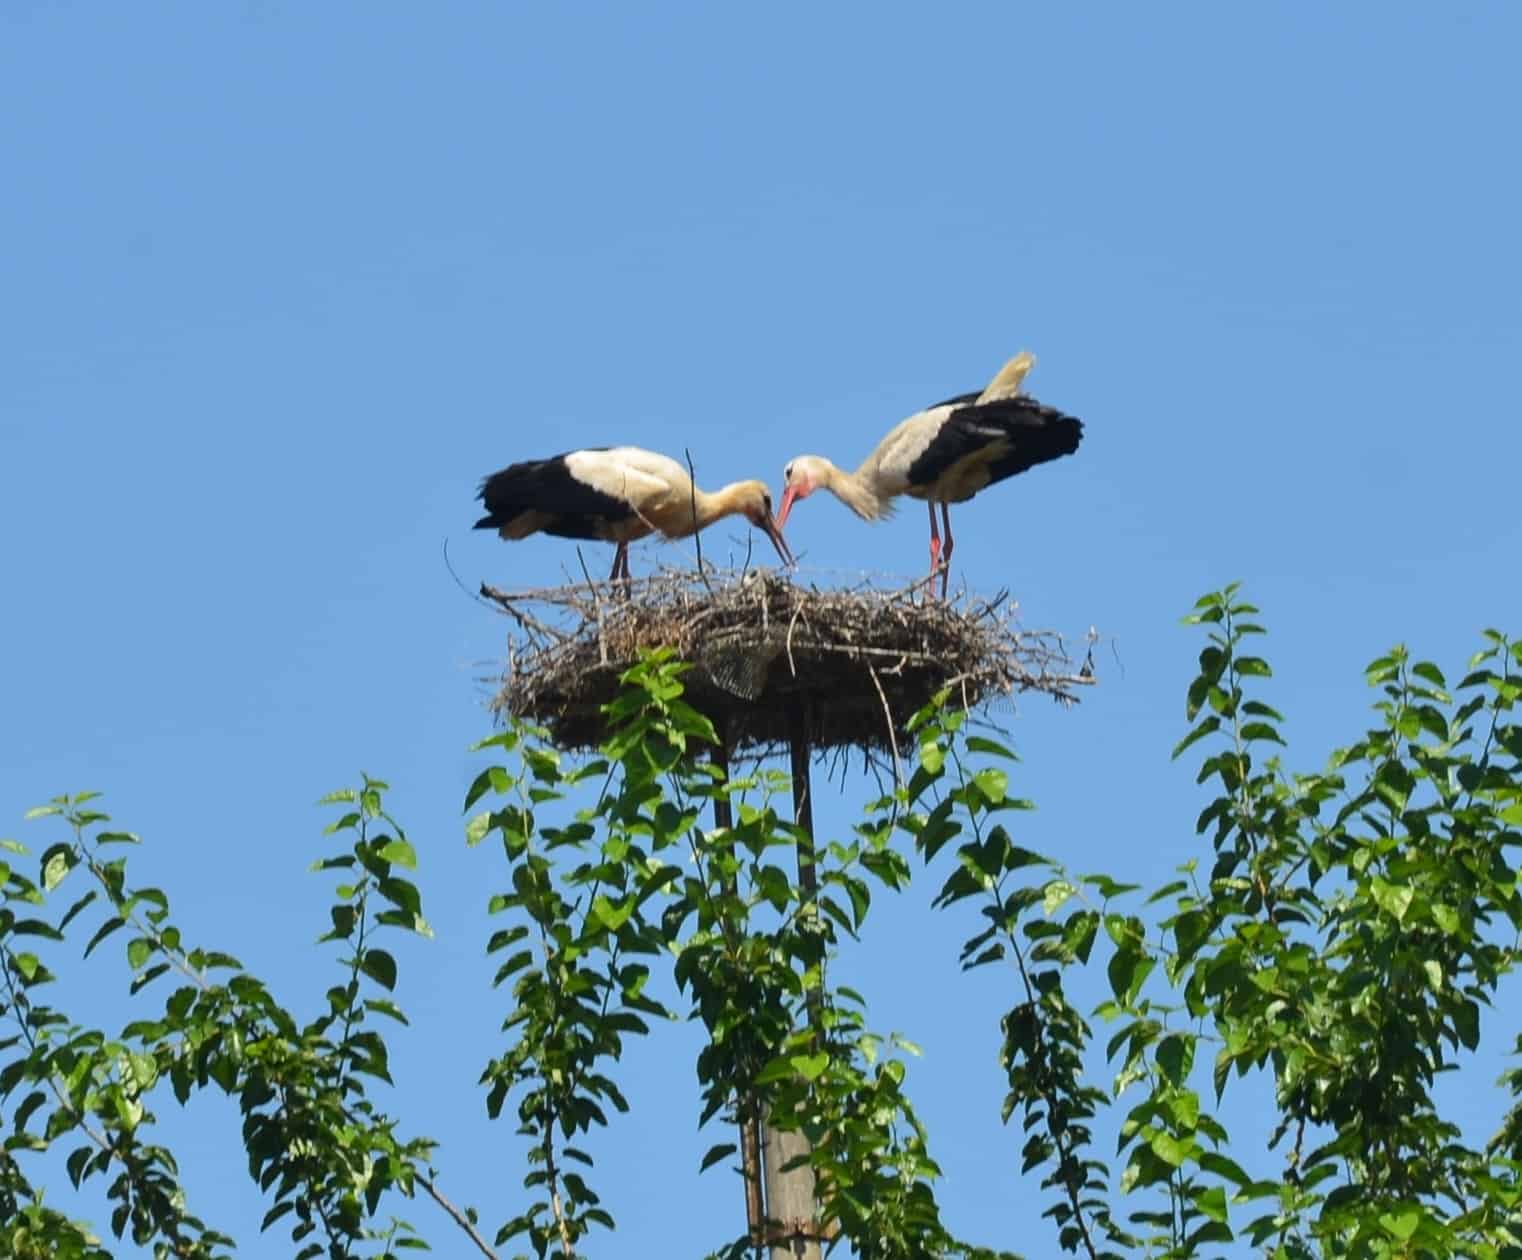 Storks tending to their nest